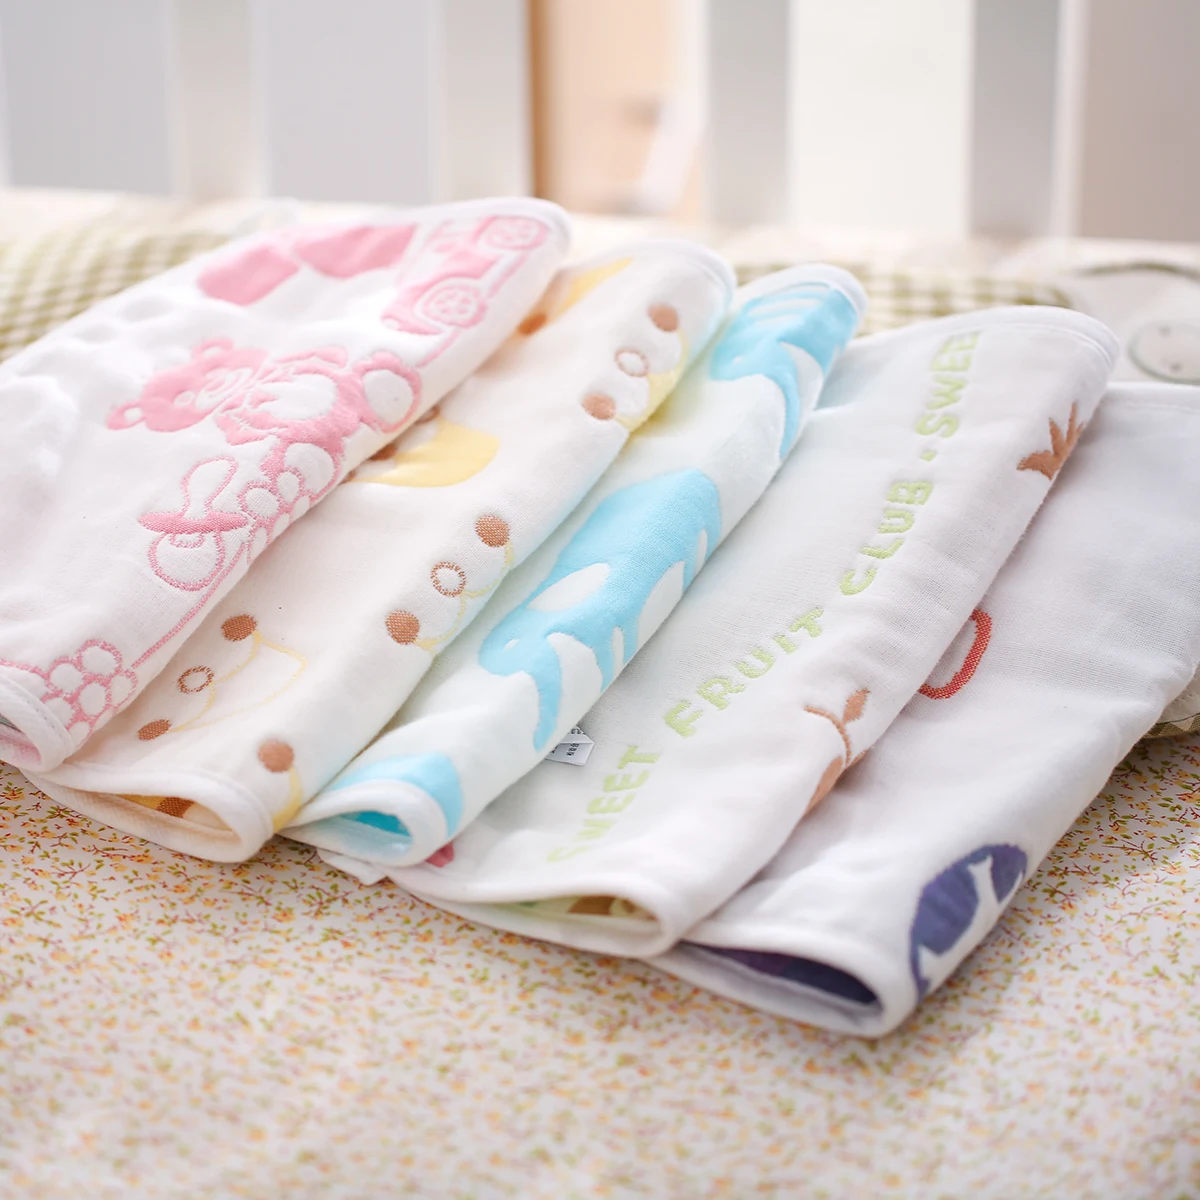 Herbabe 25x25 см детское полотенце для лица 6 слоев очень мягкий детский банный полотенце s мочалки хлопок Новорожденный Кормление тканевые салфетки